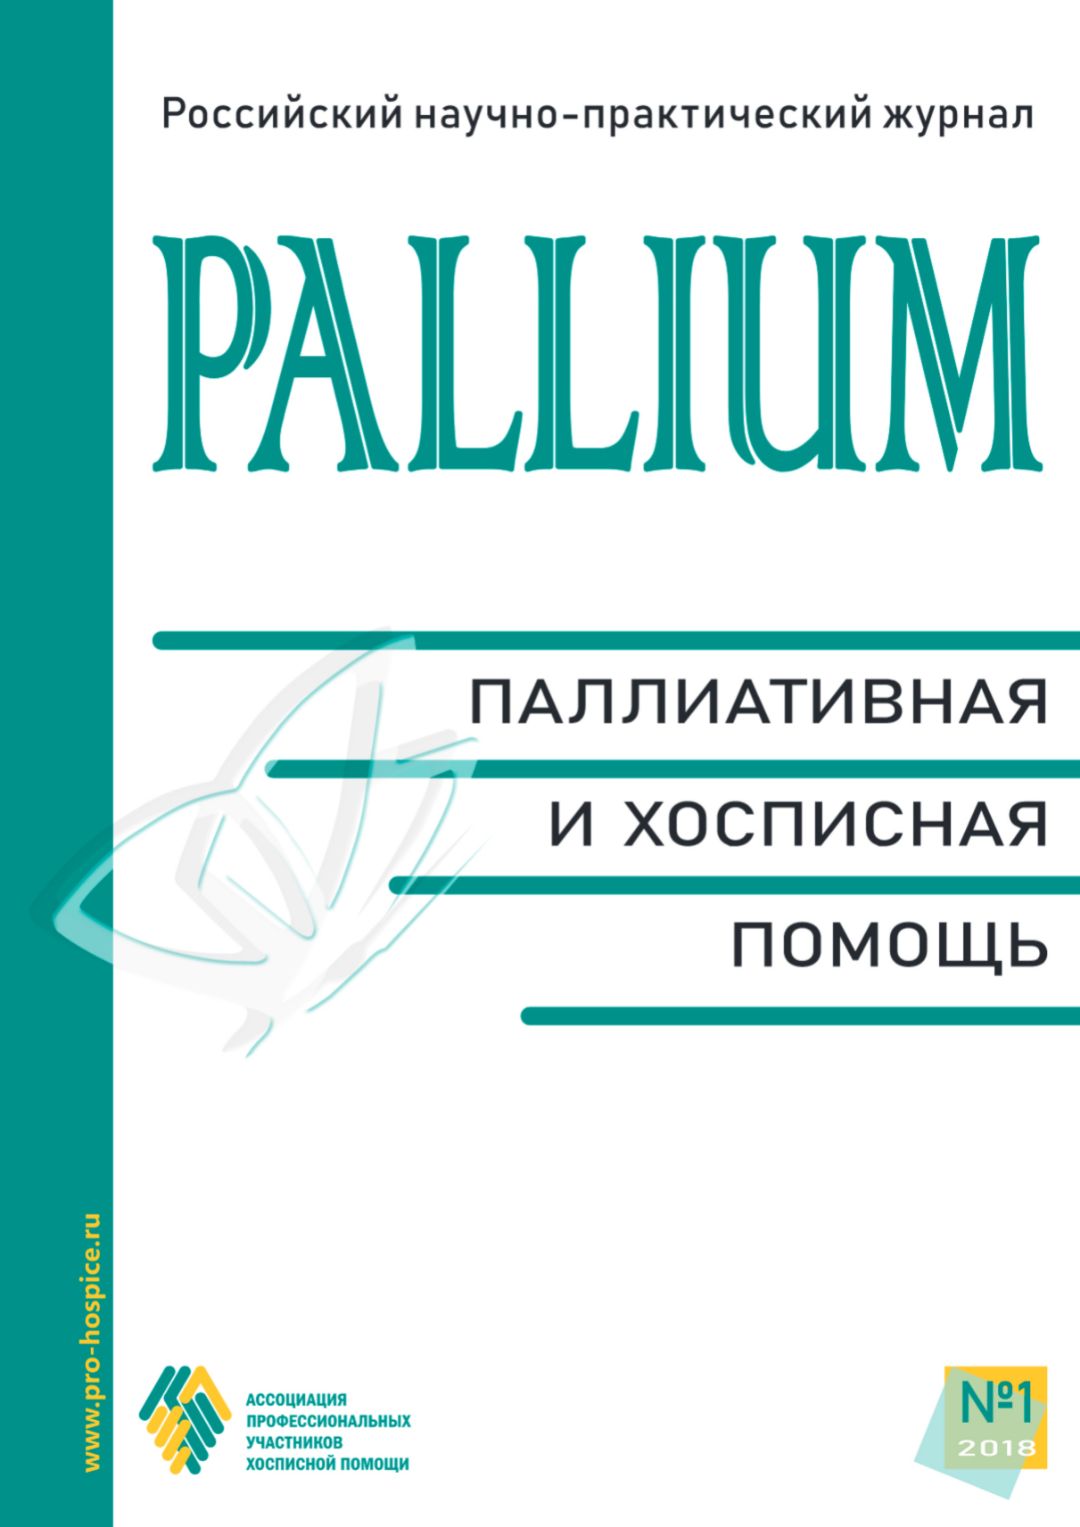 Обложка журнала «Pallium: паллиативная и хосписная помощь»